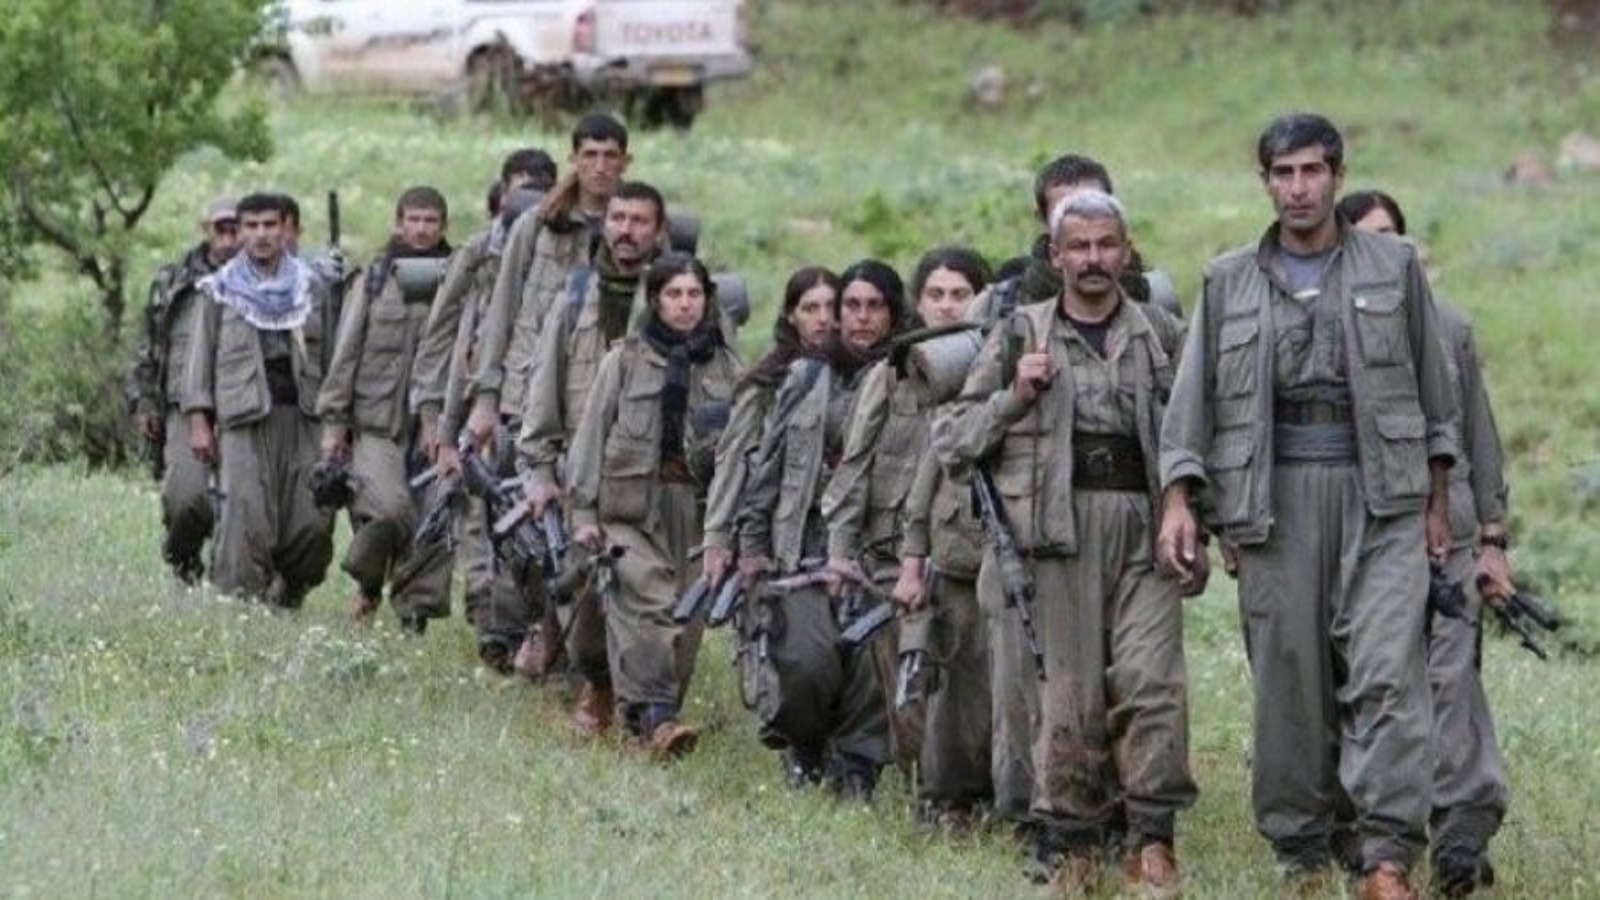  مقاتلون لحزب العمال التركي الكردستاني في اقليم كردستان العراق الشمالي